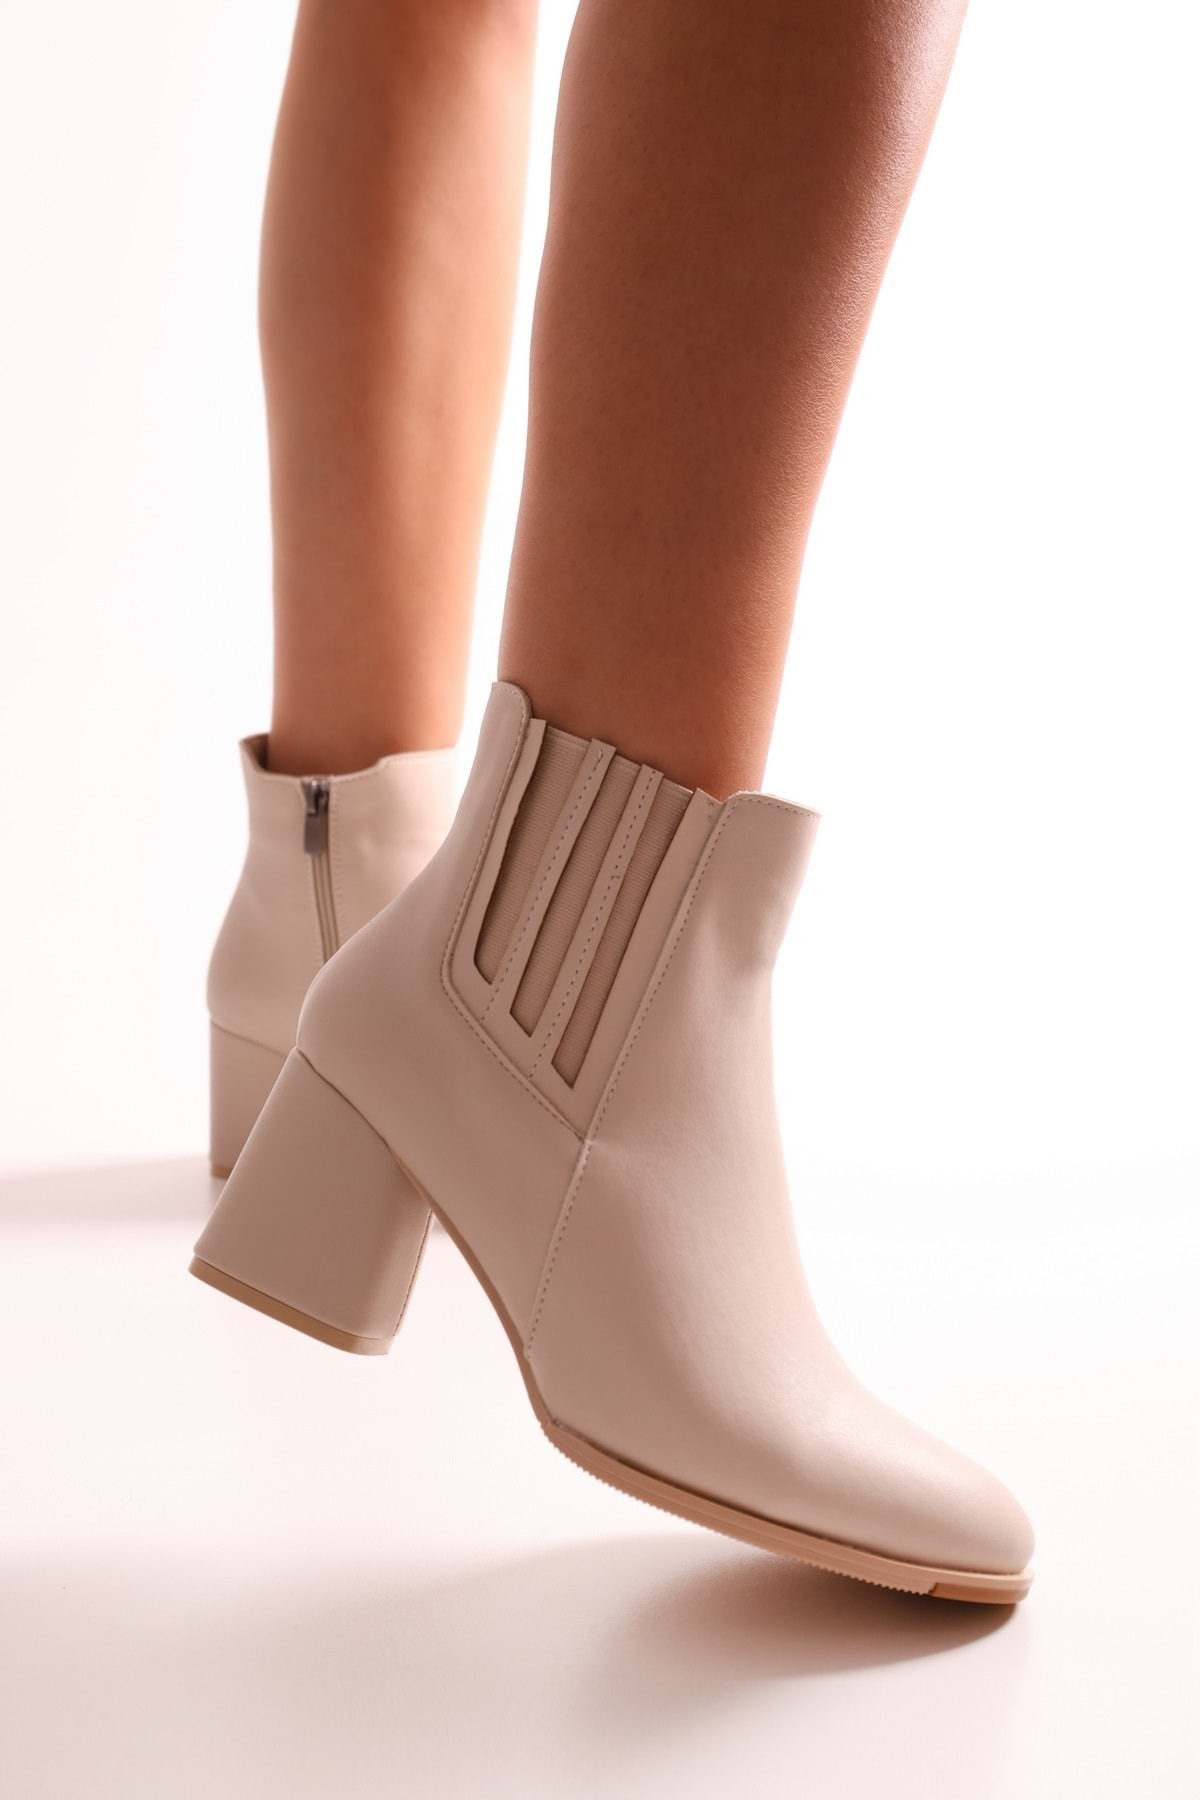 Shoeberry Women's Misty Beige Skin Heels Boots, Beige Skin